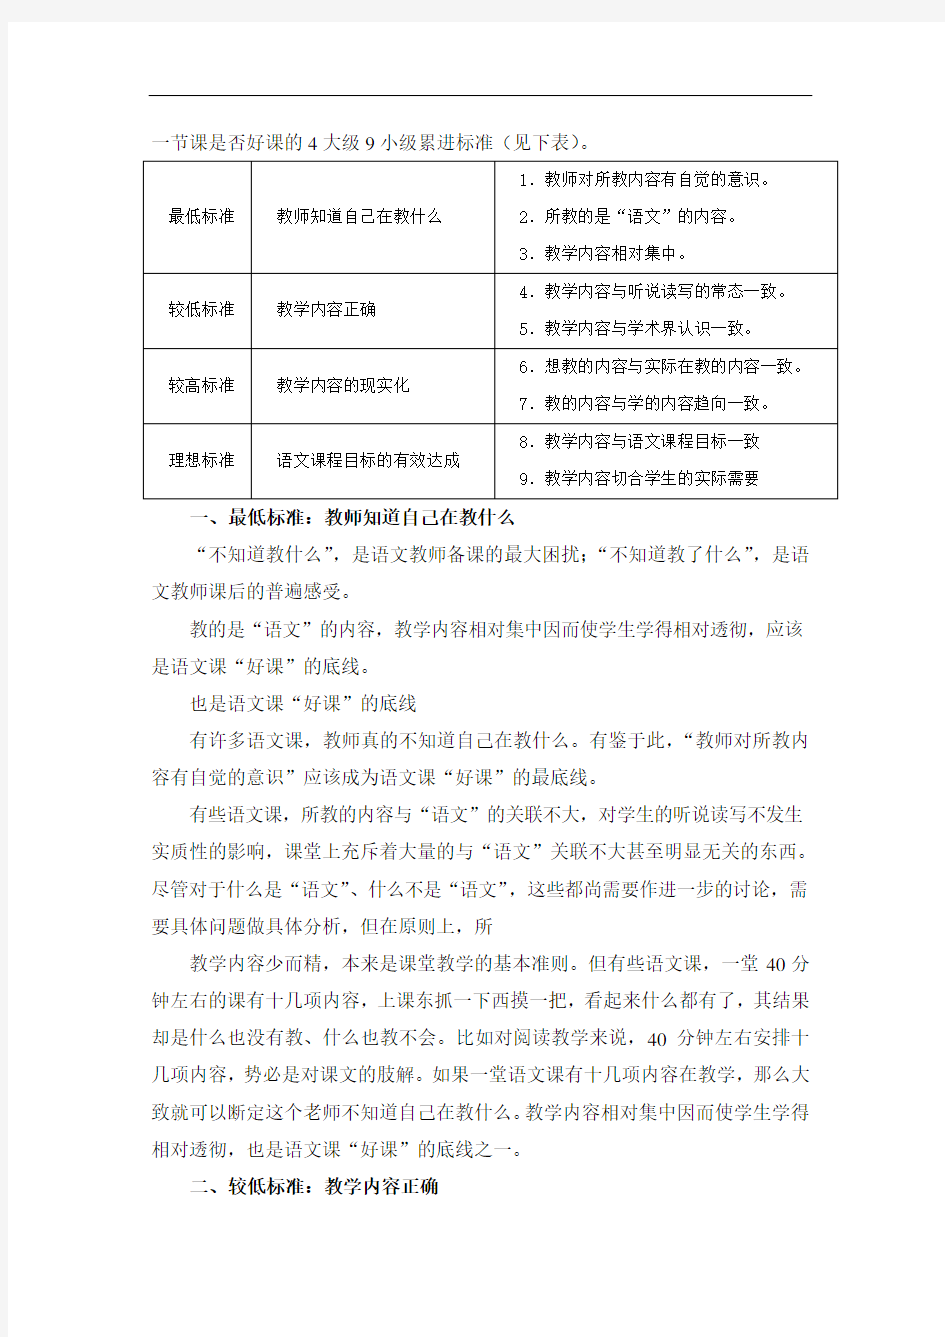 第四章初中语文新课程设计教学内容的安排